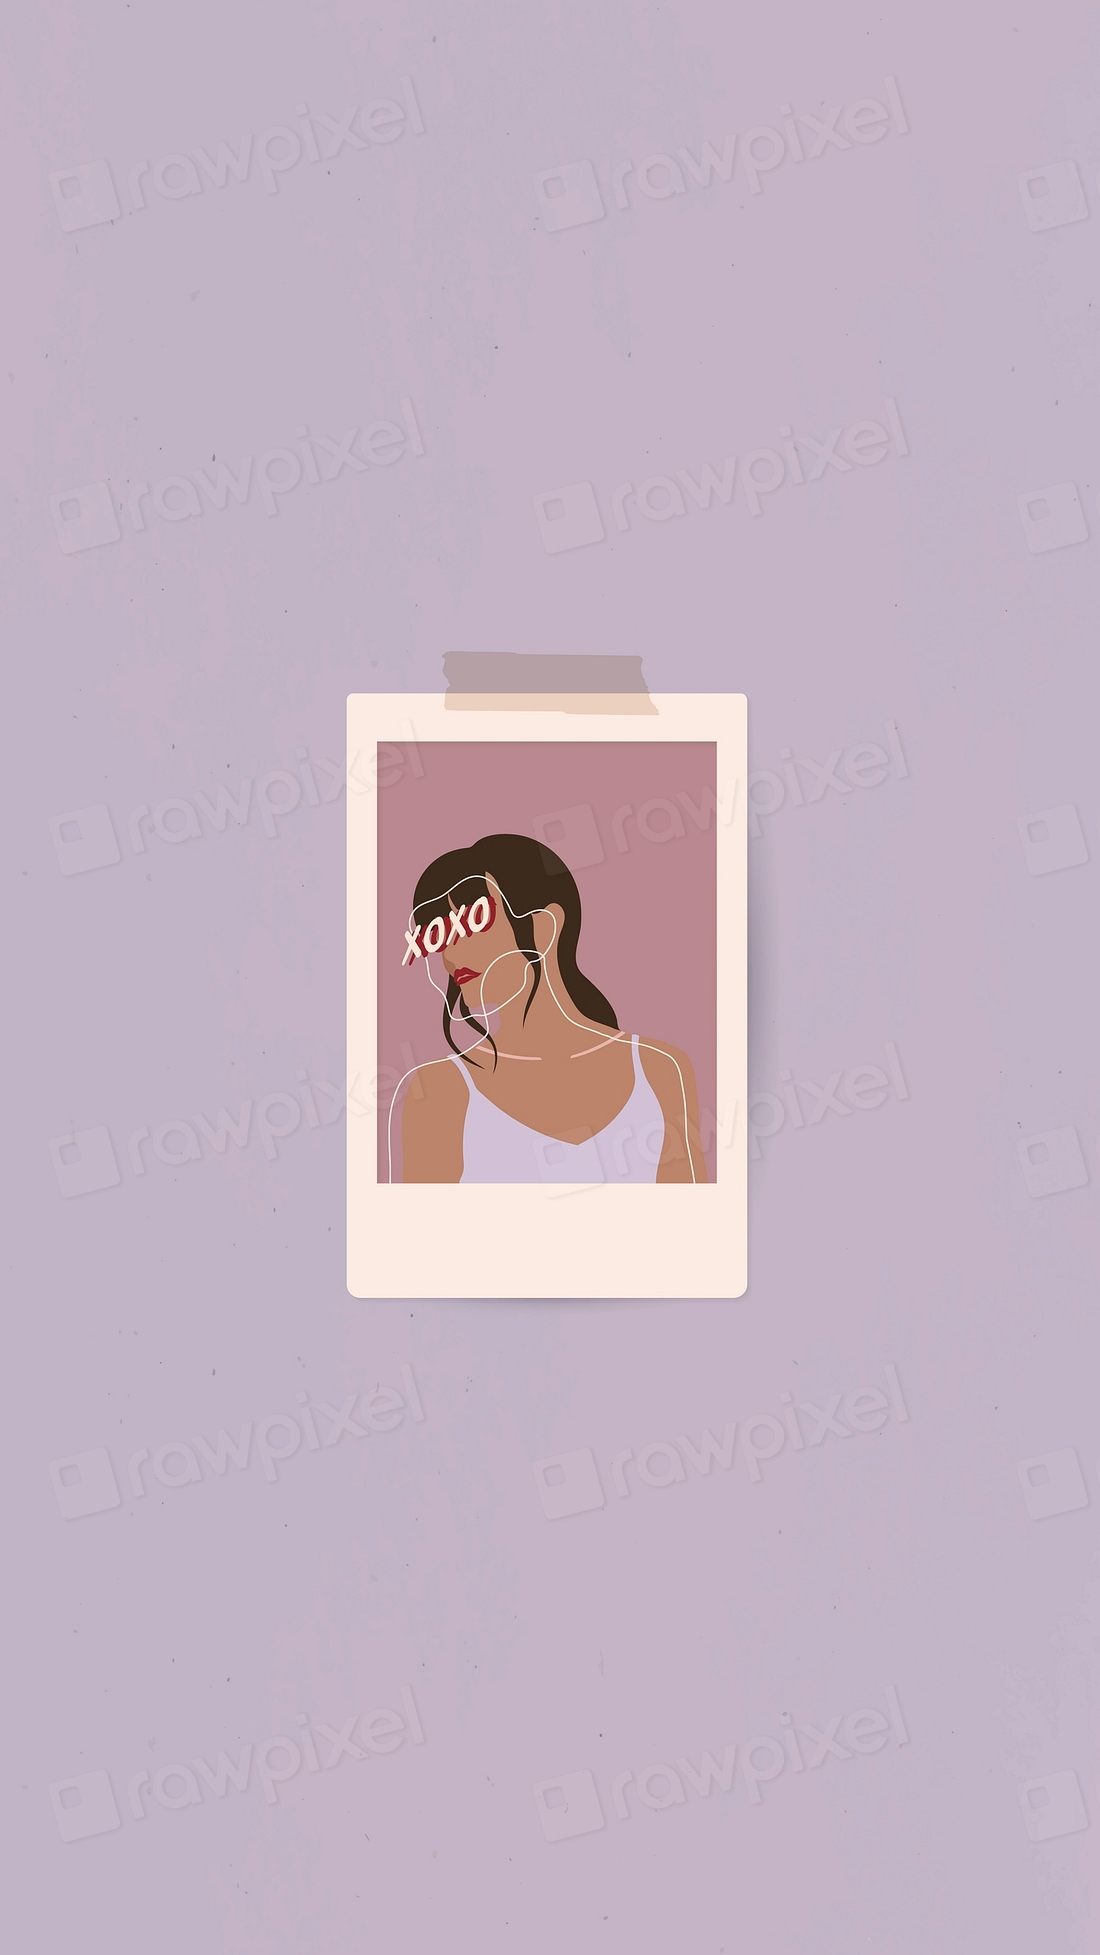 Woman frame mobile phone wallpaper | Premium Vector - rawpixel